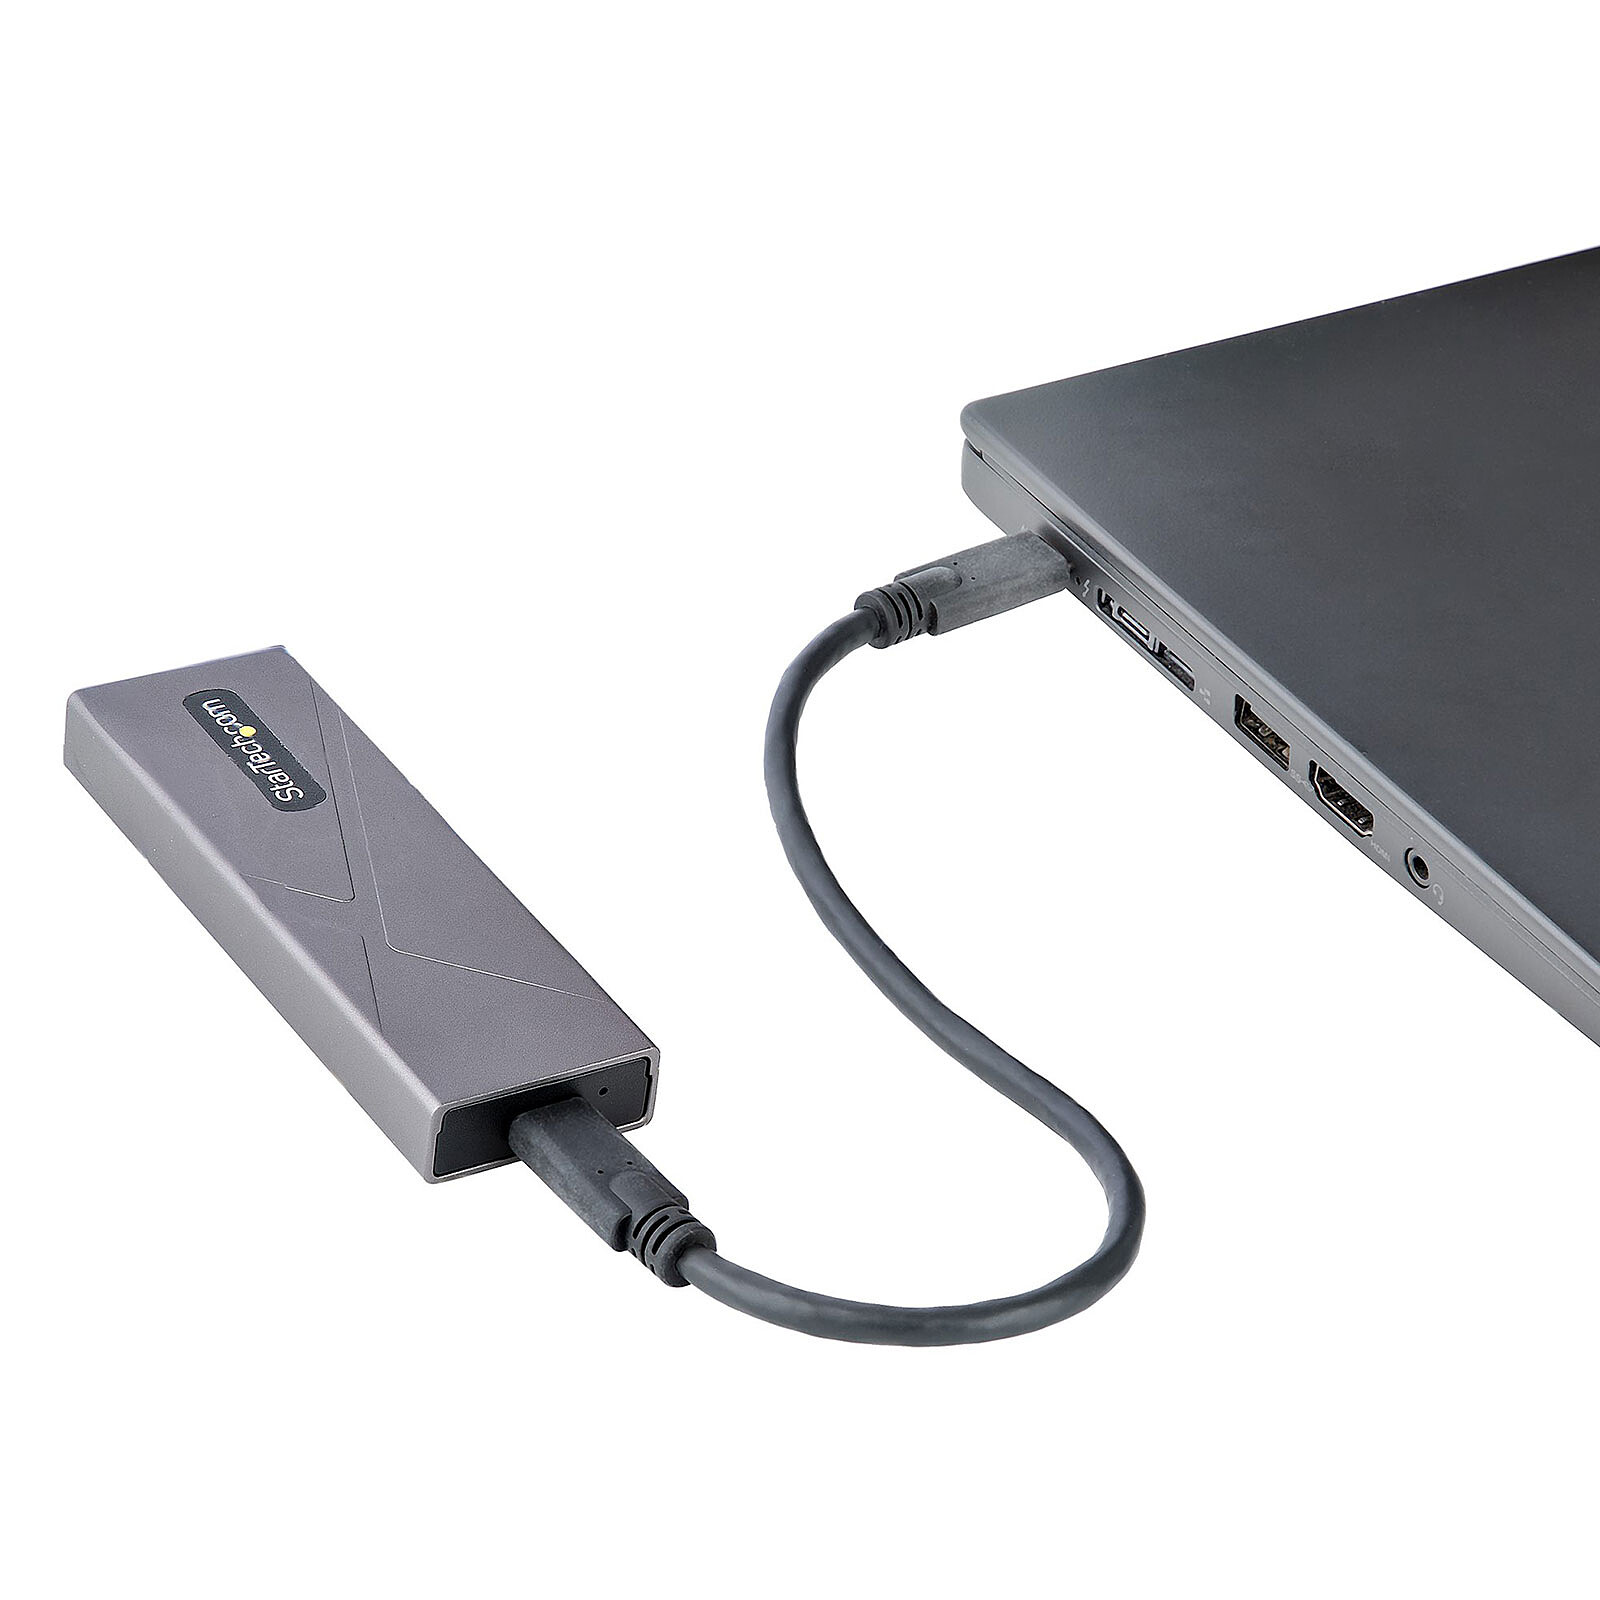 Carcasa USB 3.0 (5 Gb/s) de StarTech.com para disco duro SATA de 2,5 / SSD  encriptado - Caja de disco duro - LDLC